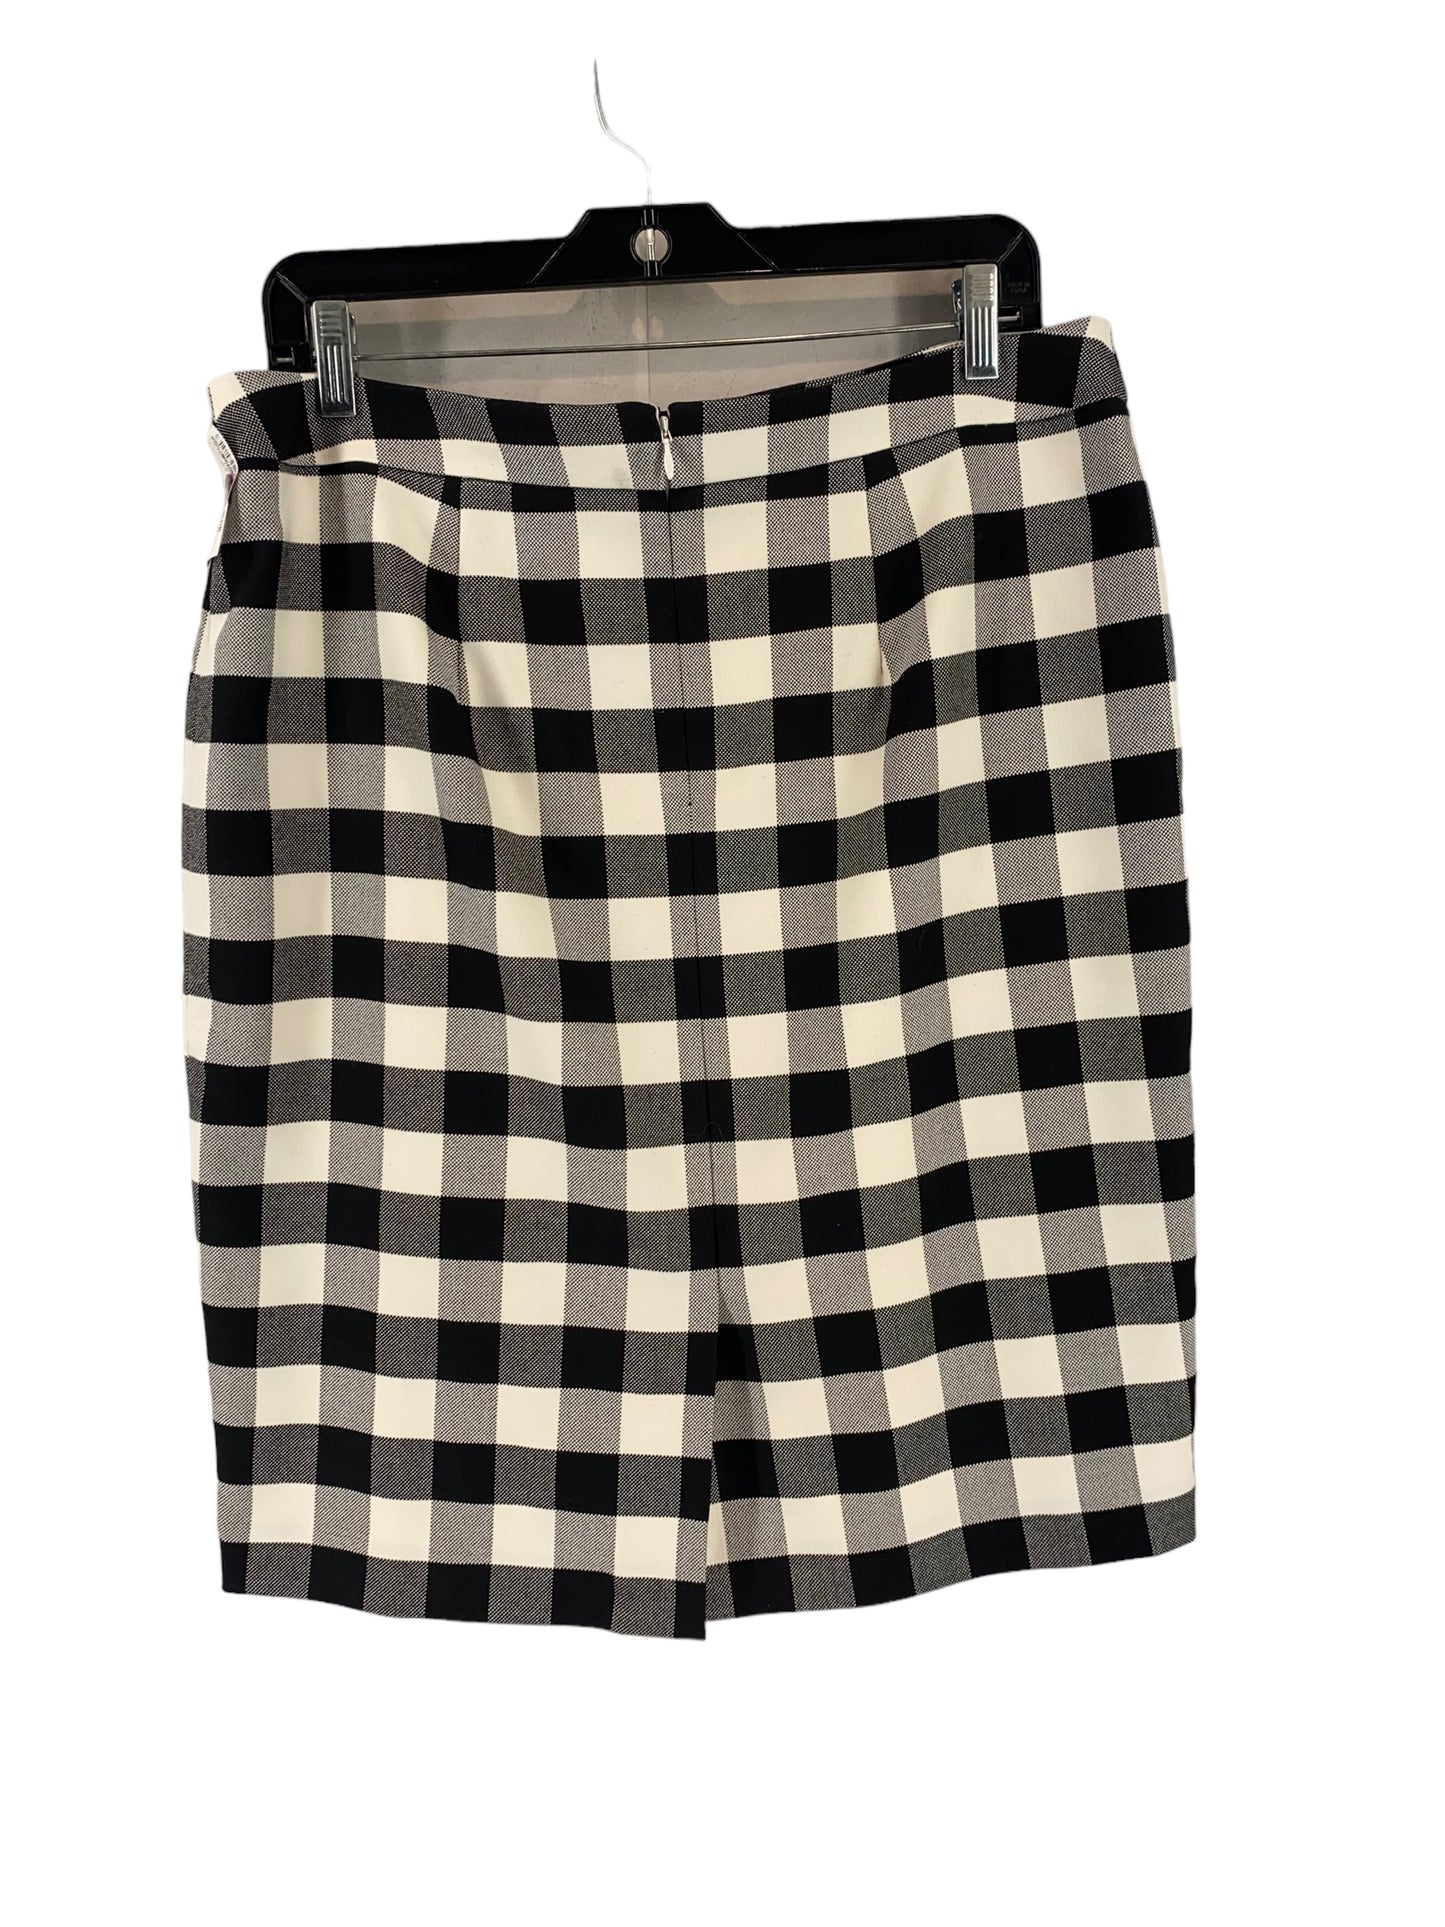 Skirt Midi By Ann Taylor  Size: 14petite